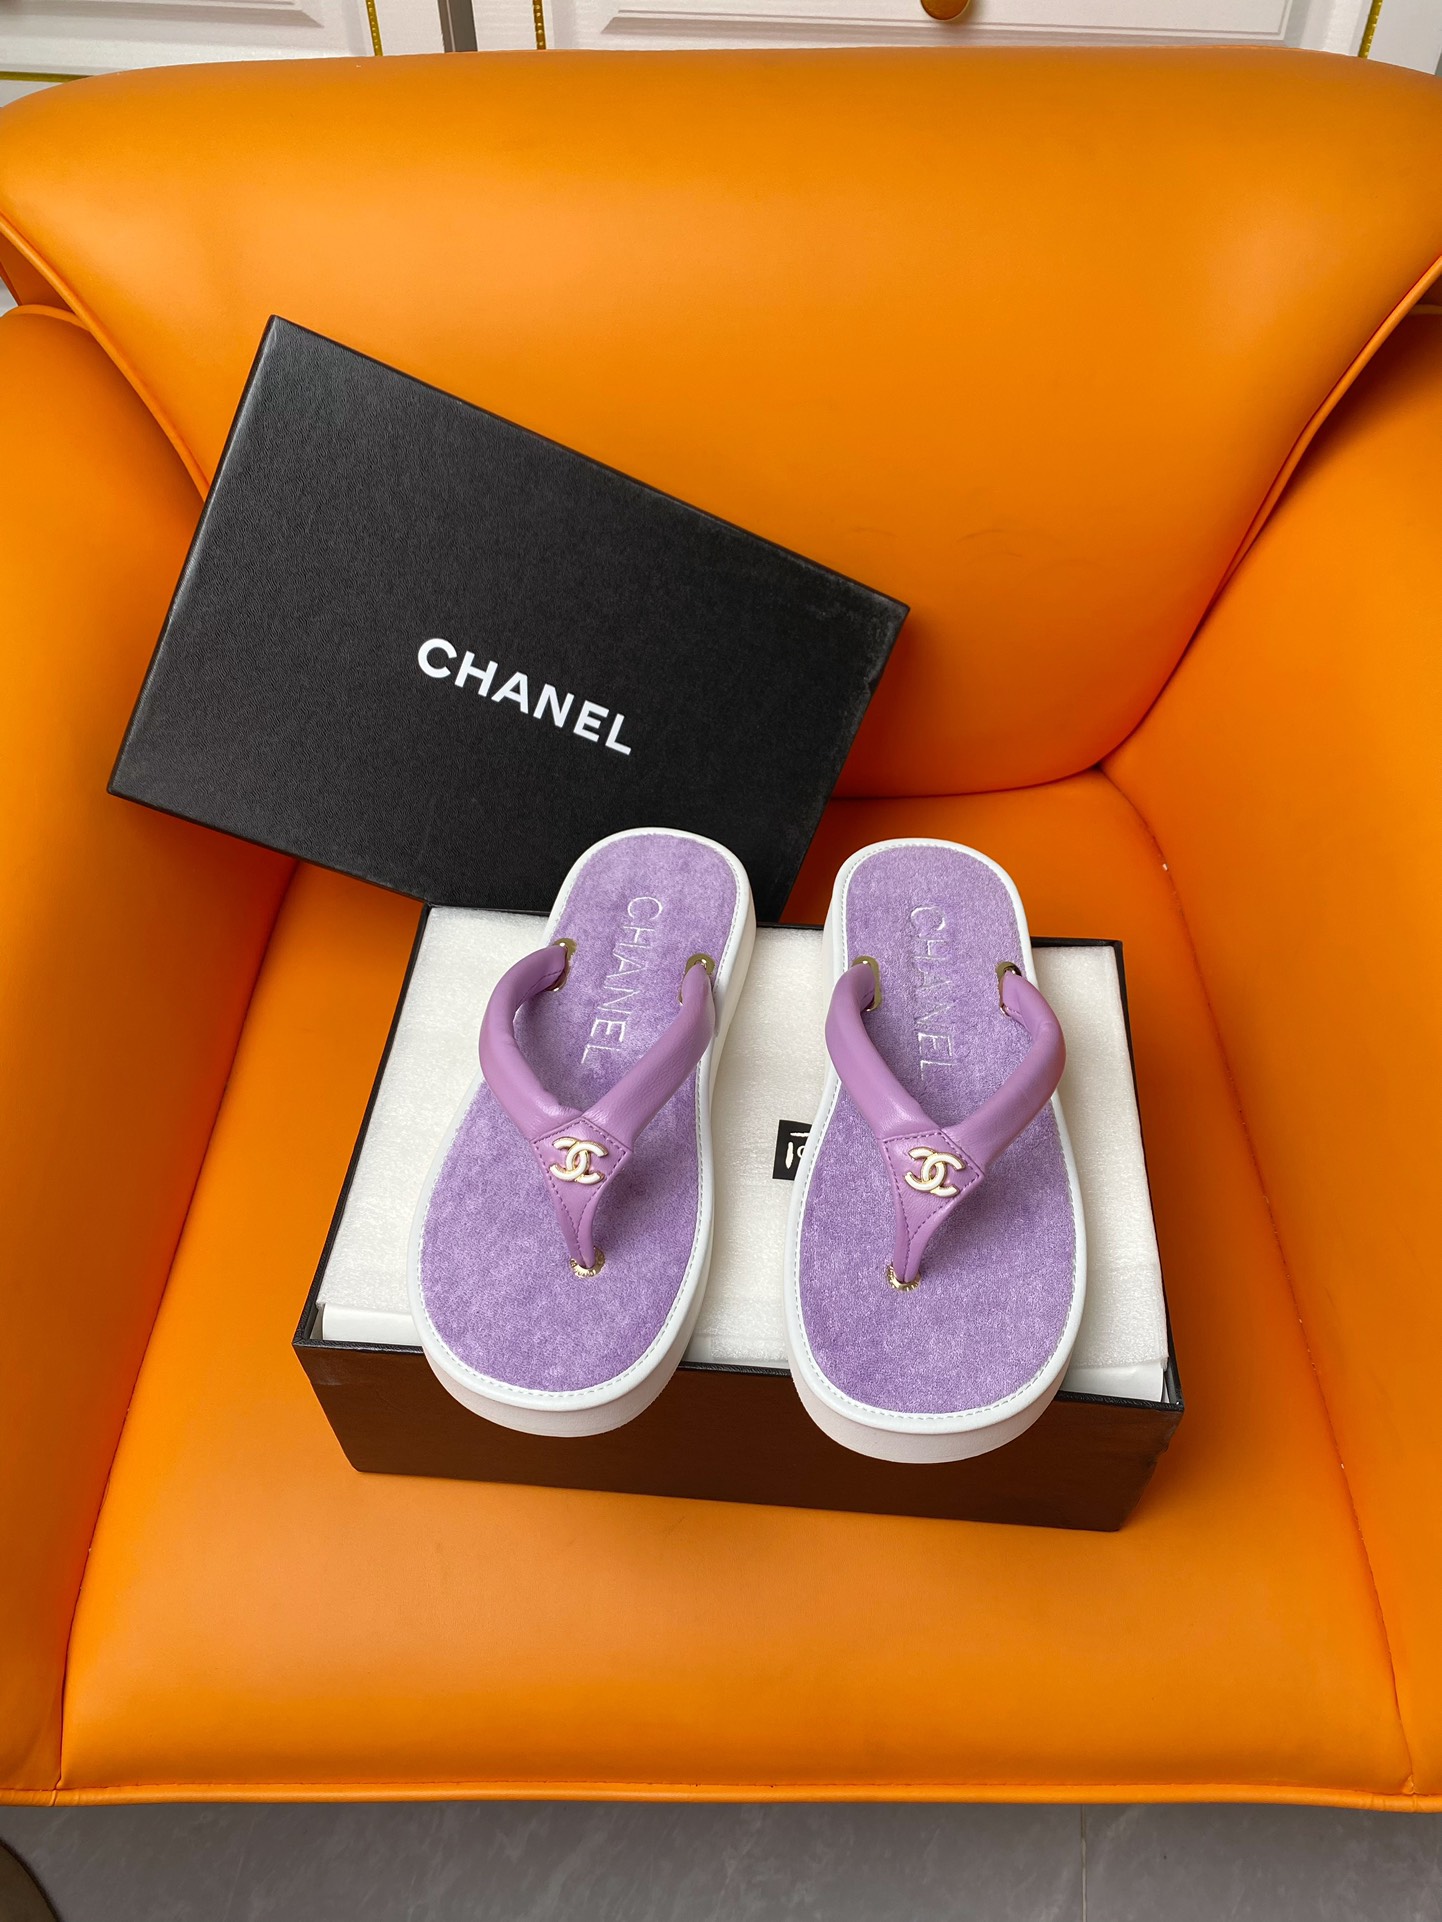 Chanel AAAAA
 Shoes Flip Flops Slippers Sheepskin Summer Collection Beach